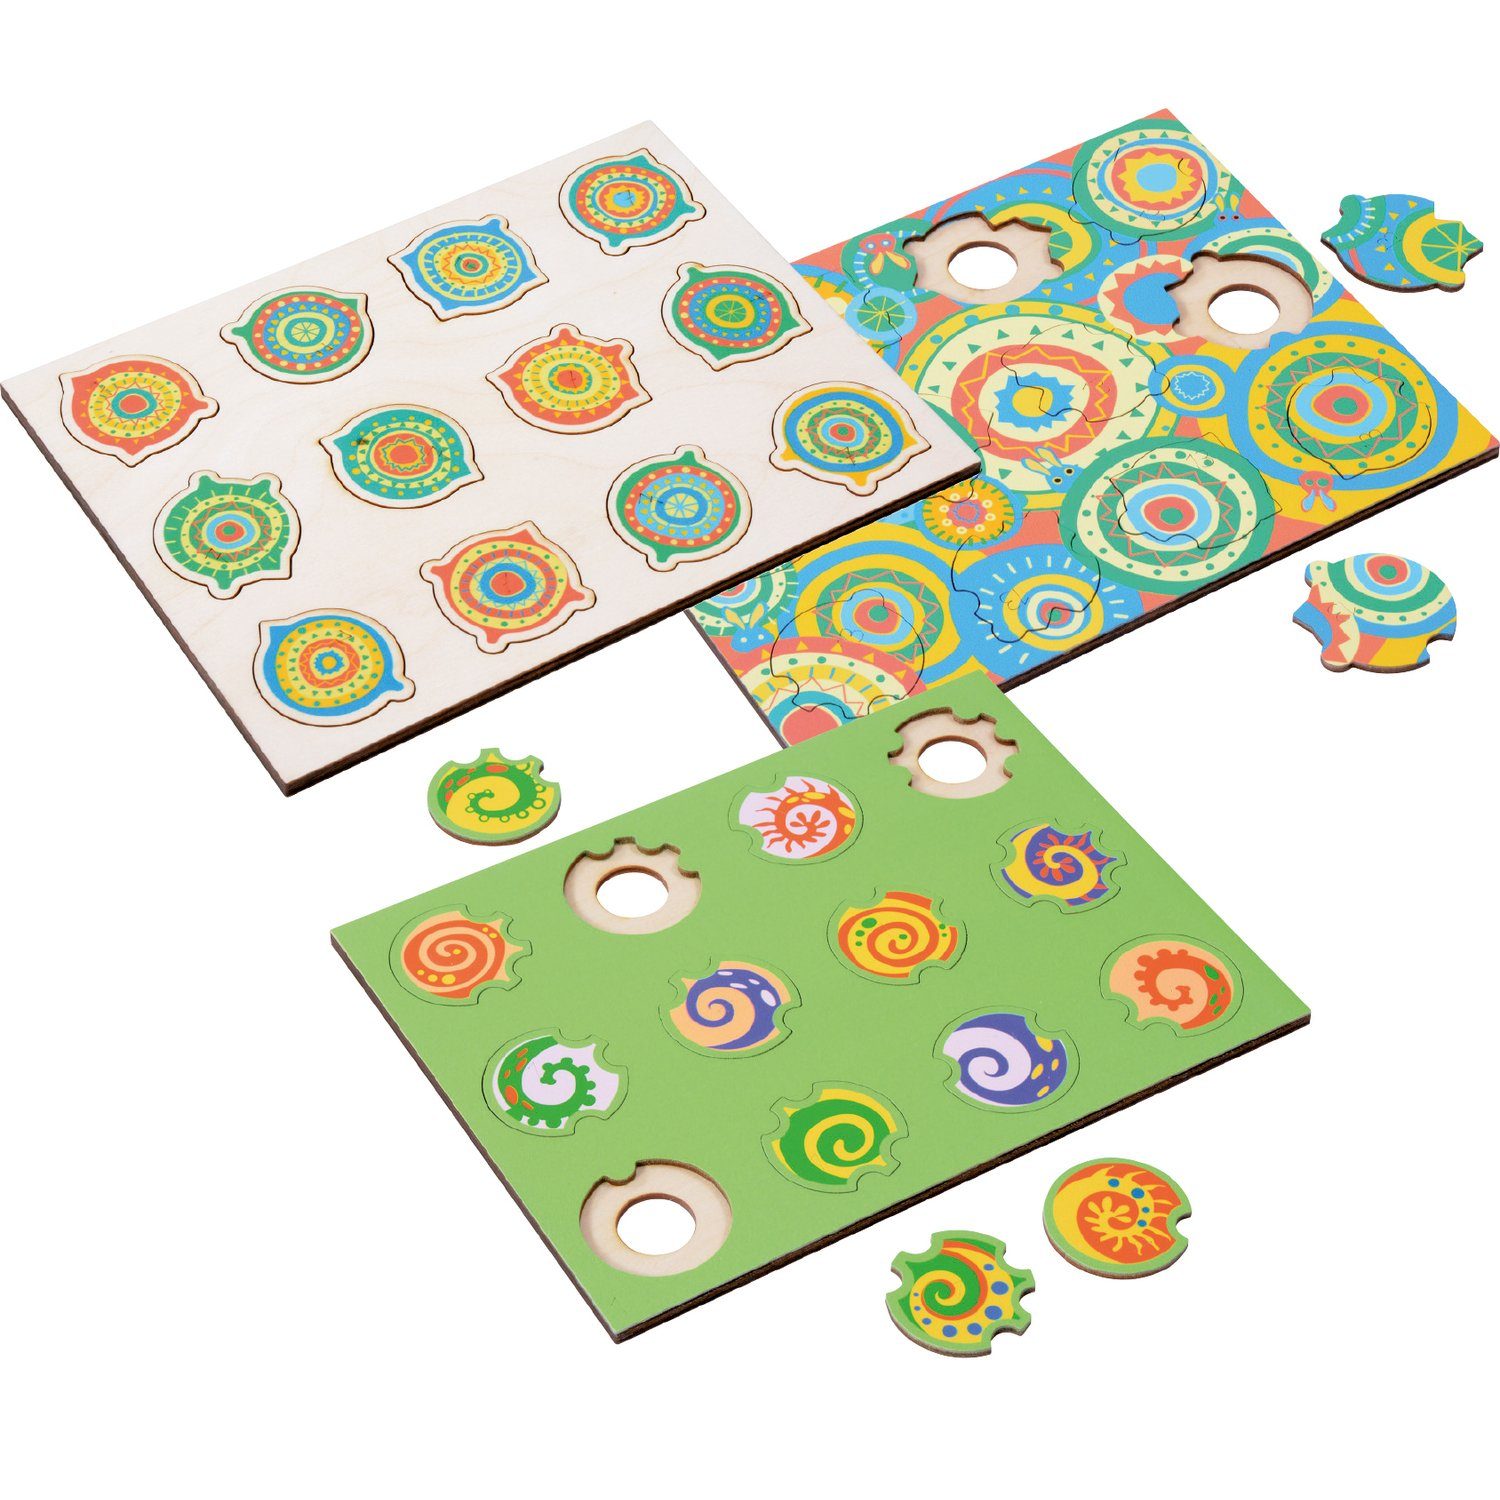 EDUPLAY Lernspielzeug Phantasiepuzzle-Set Mandala